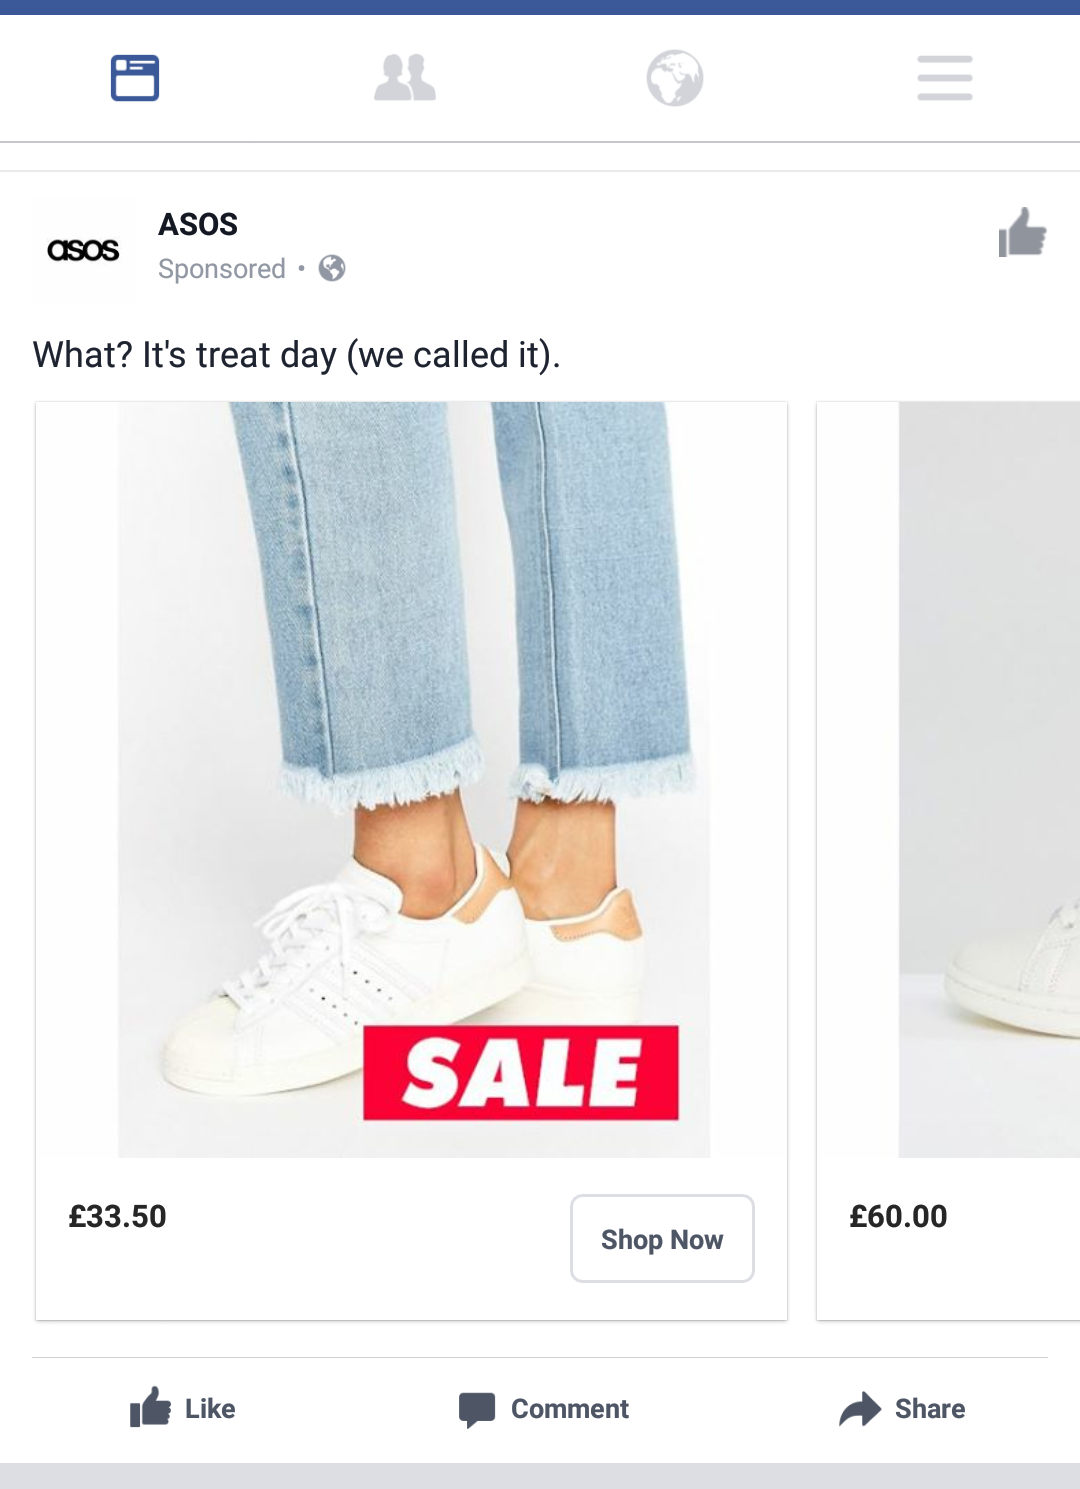 ASOS Shop Now CTA on Facebook Ad